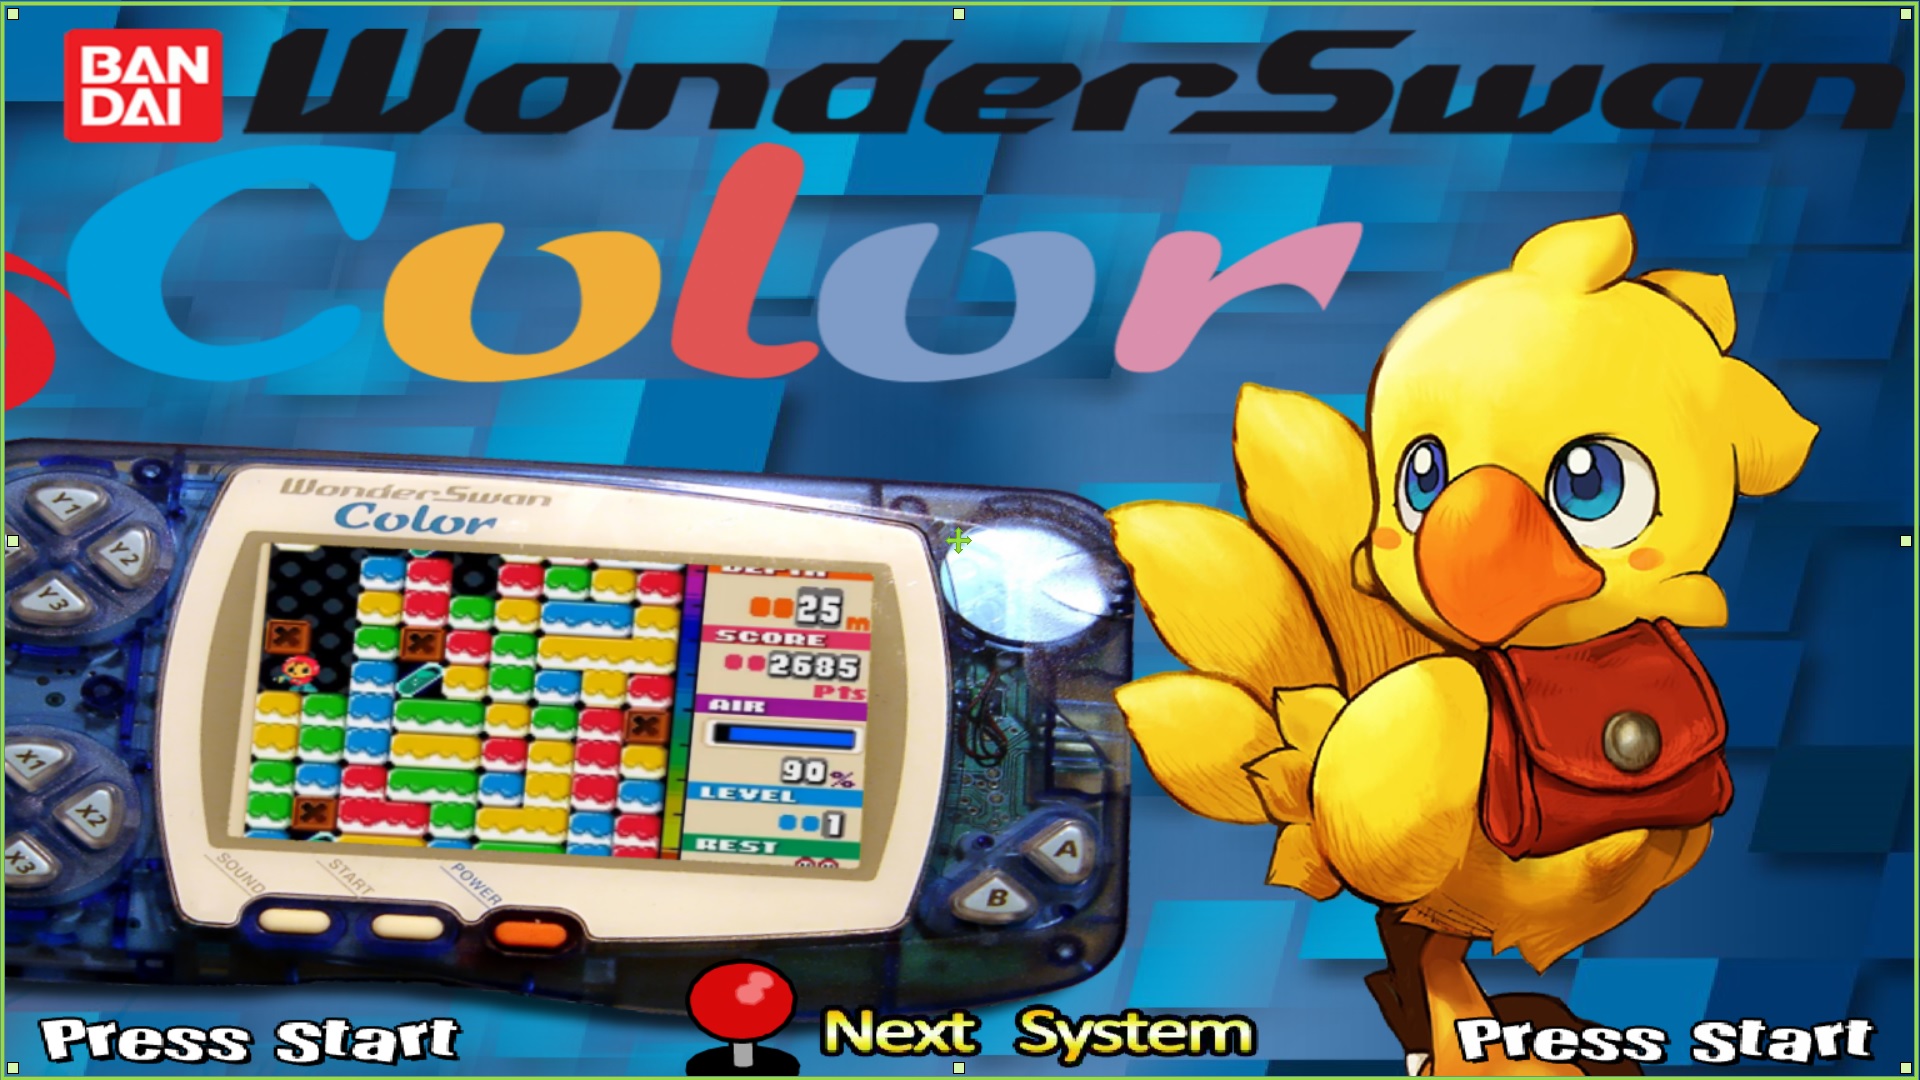 WonderSwan Color